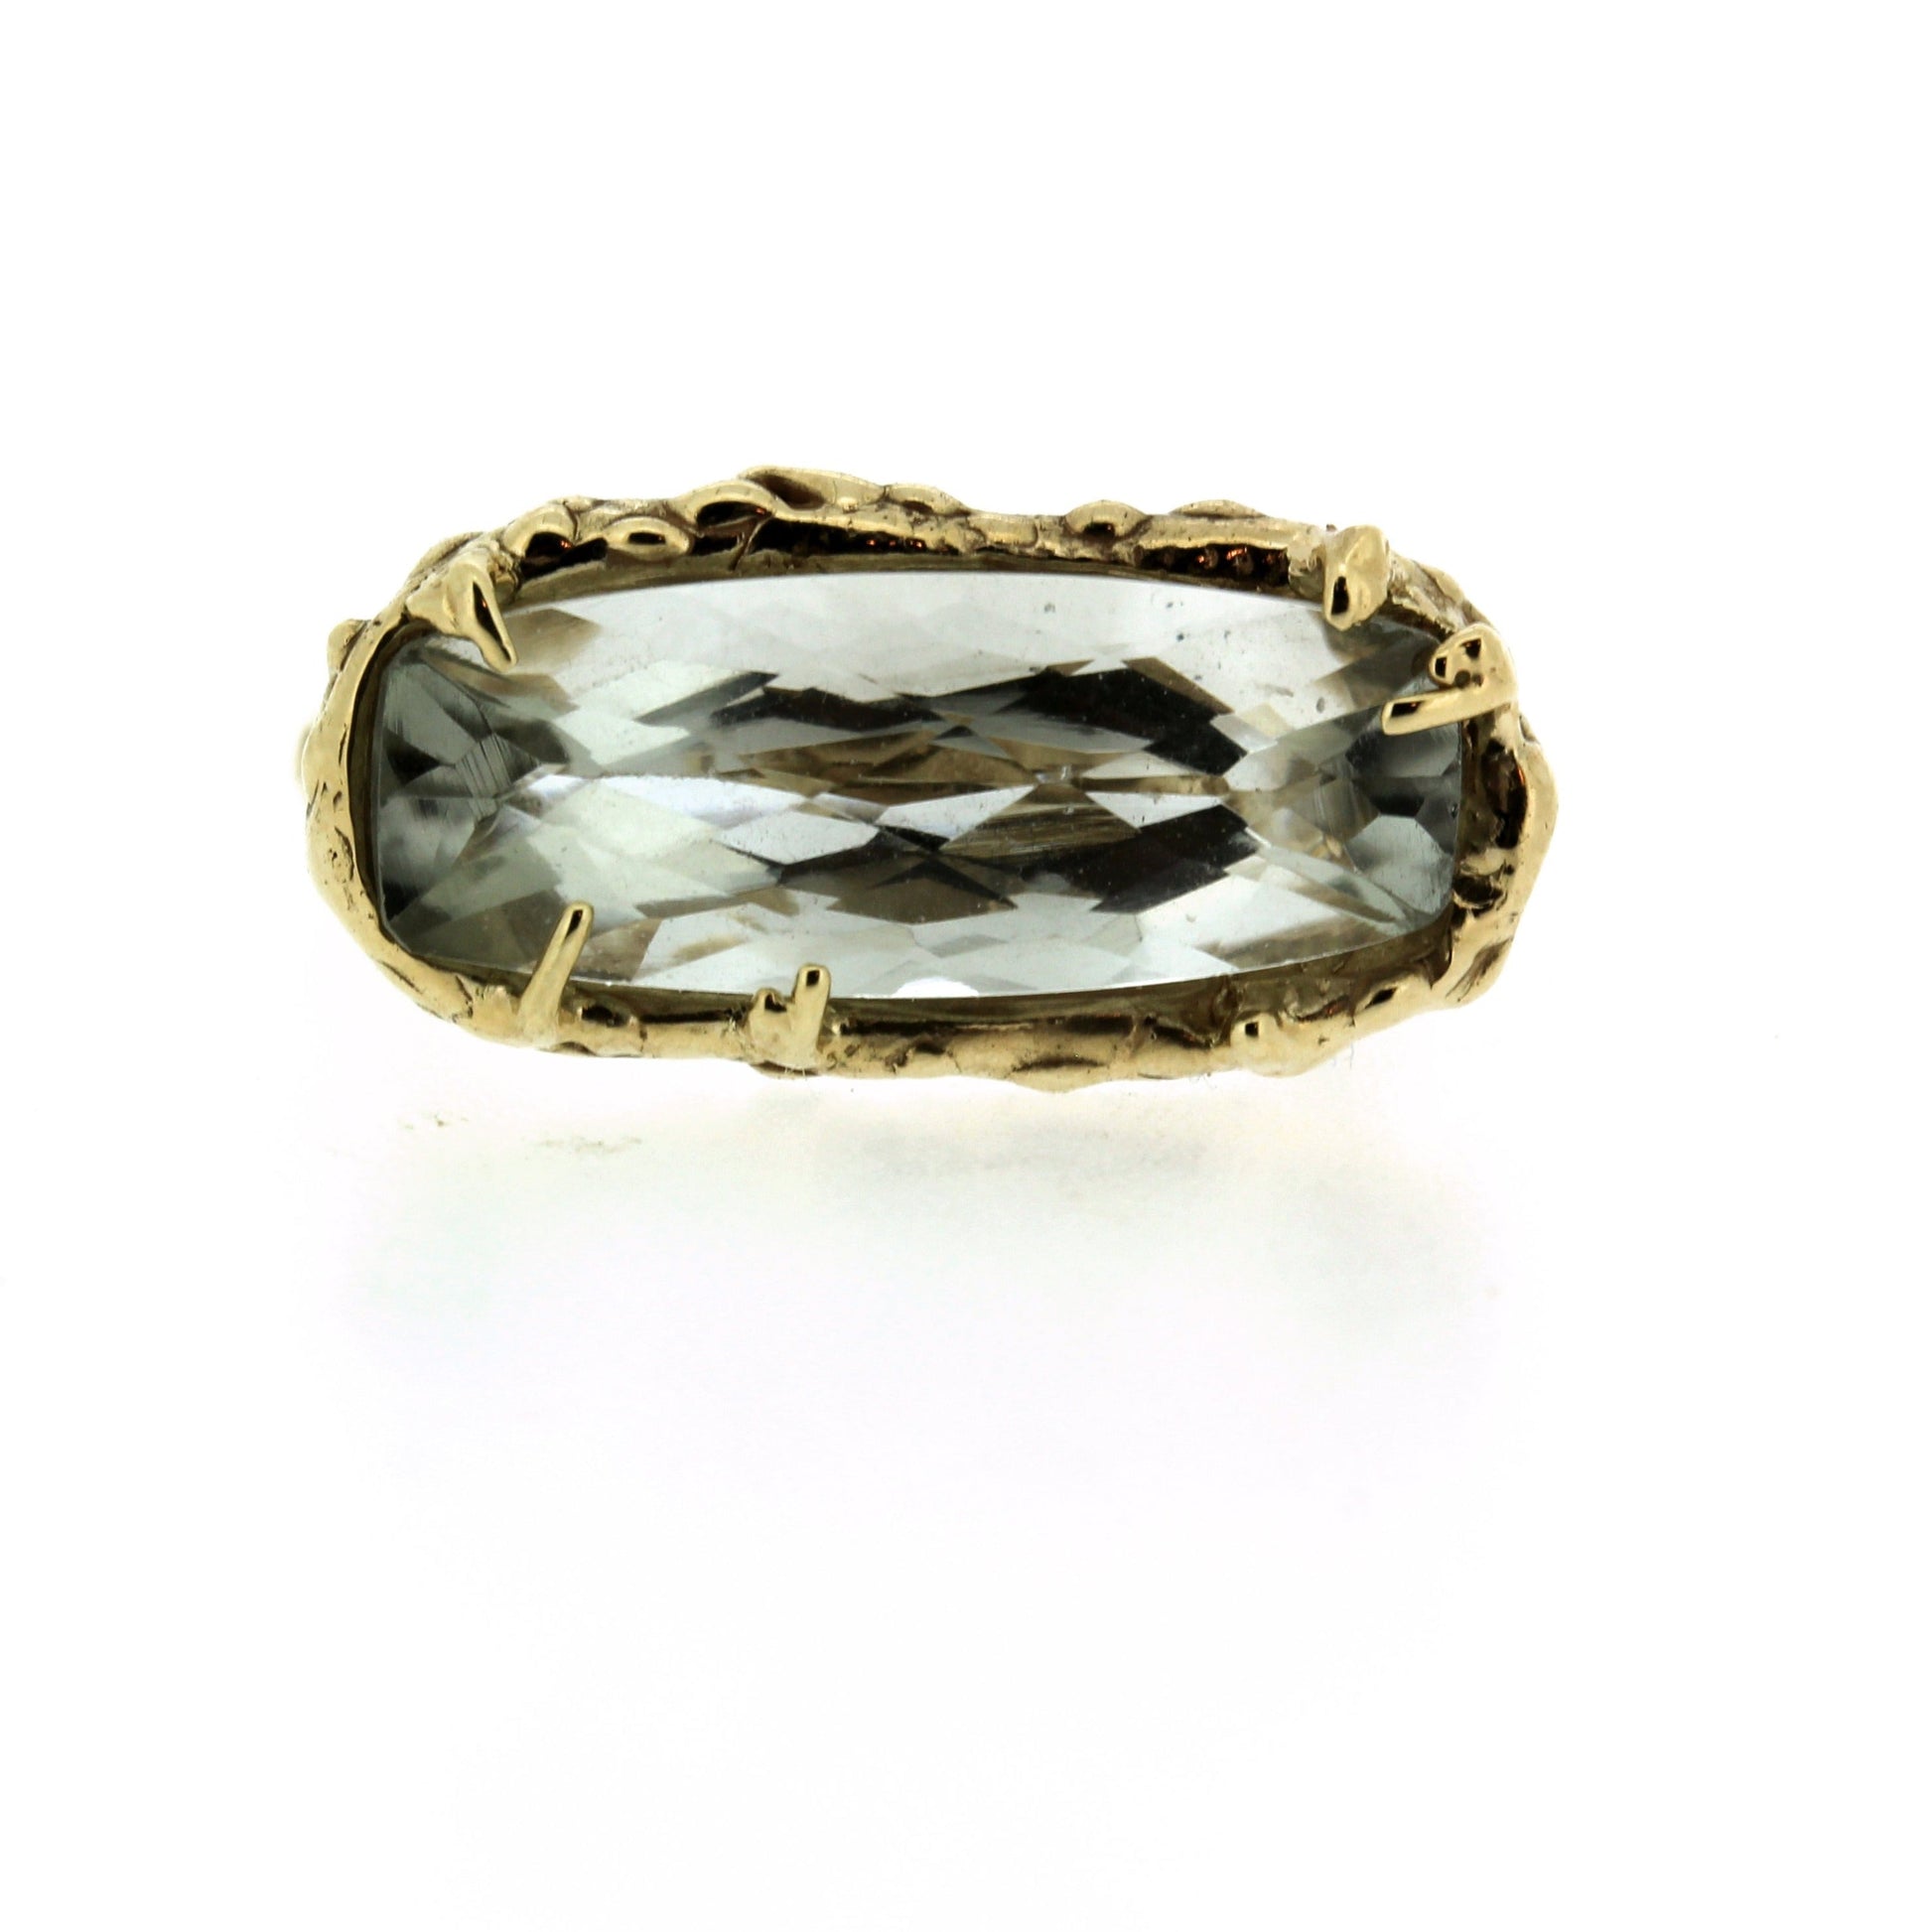 Detail shot of gemstone on Sylvian Ring.